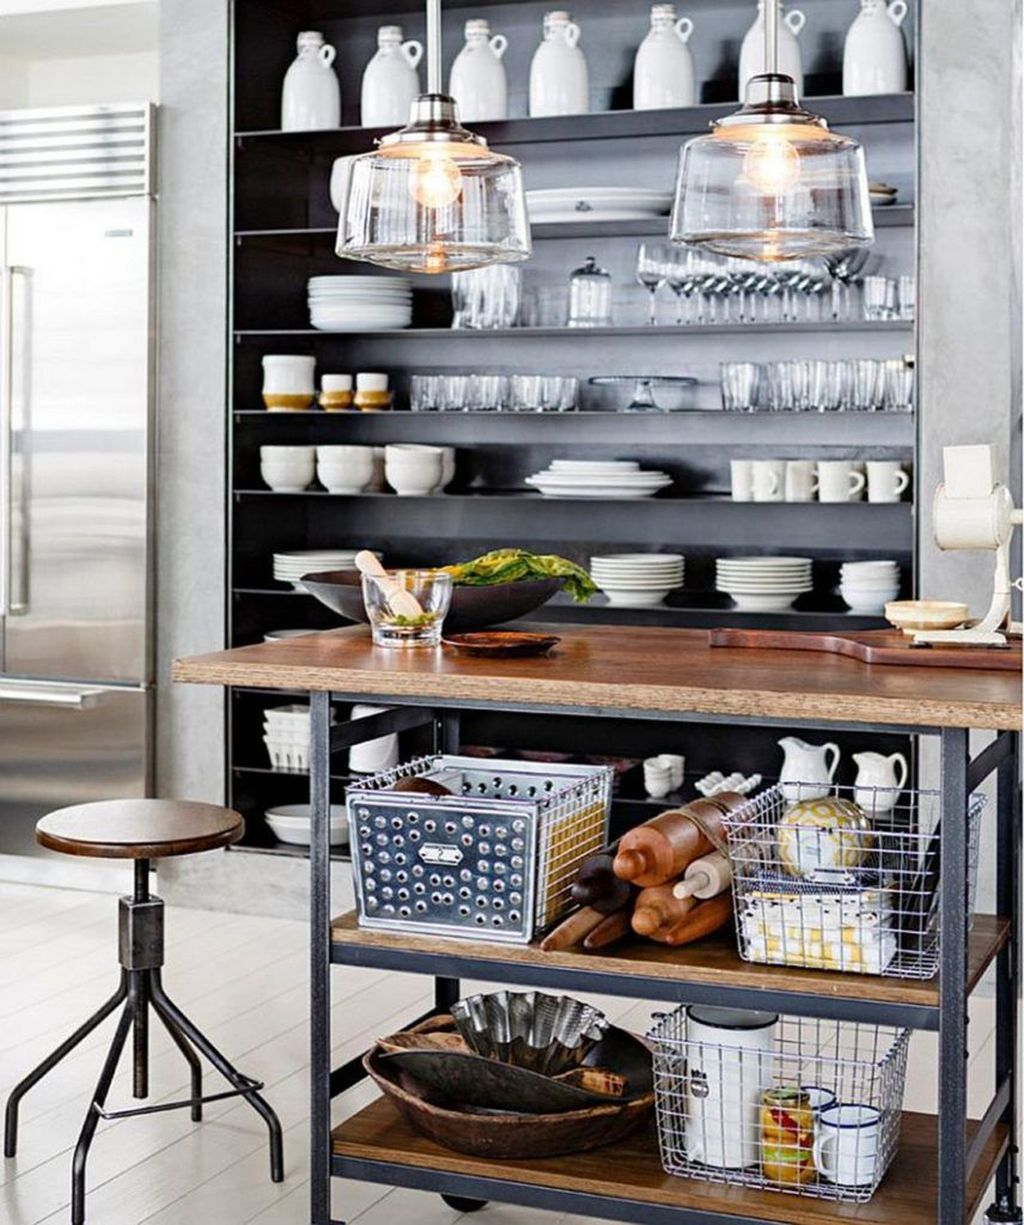 Wonderful Industrial Kitchen Shelf Design Ideas To Organize Your Kitchen15